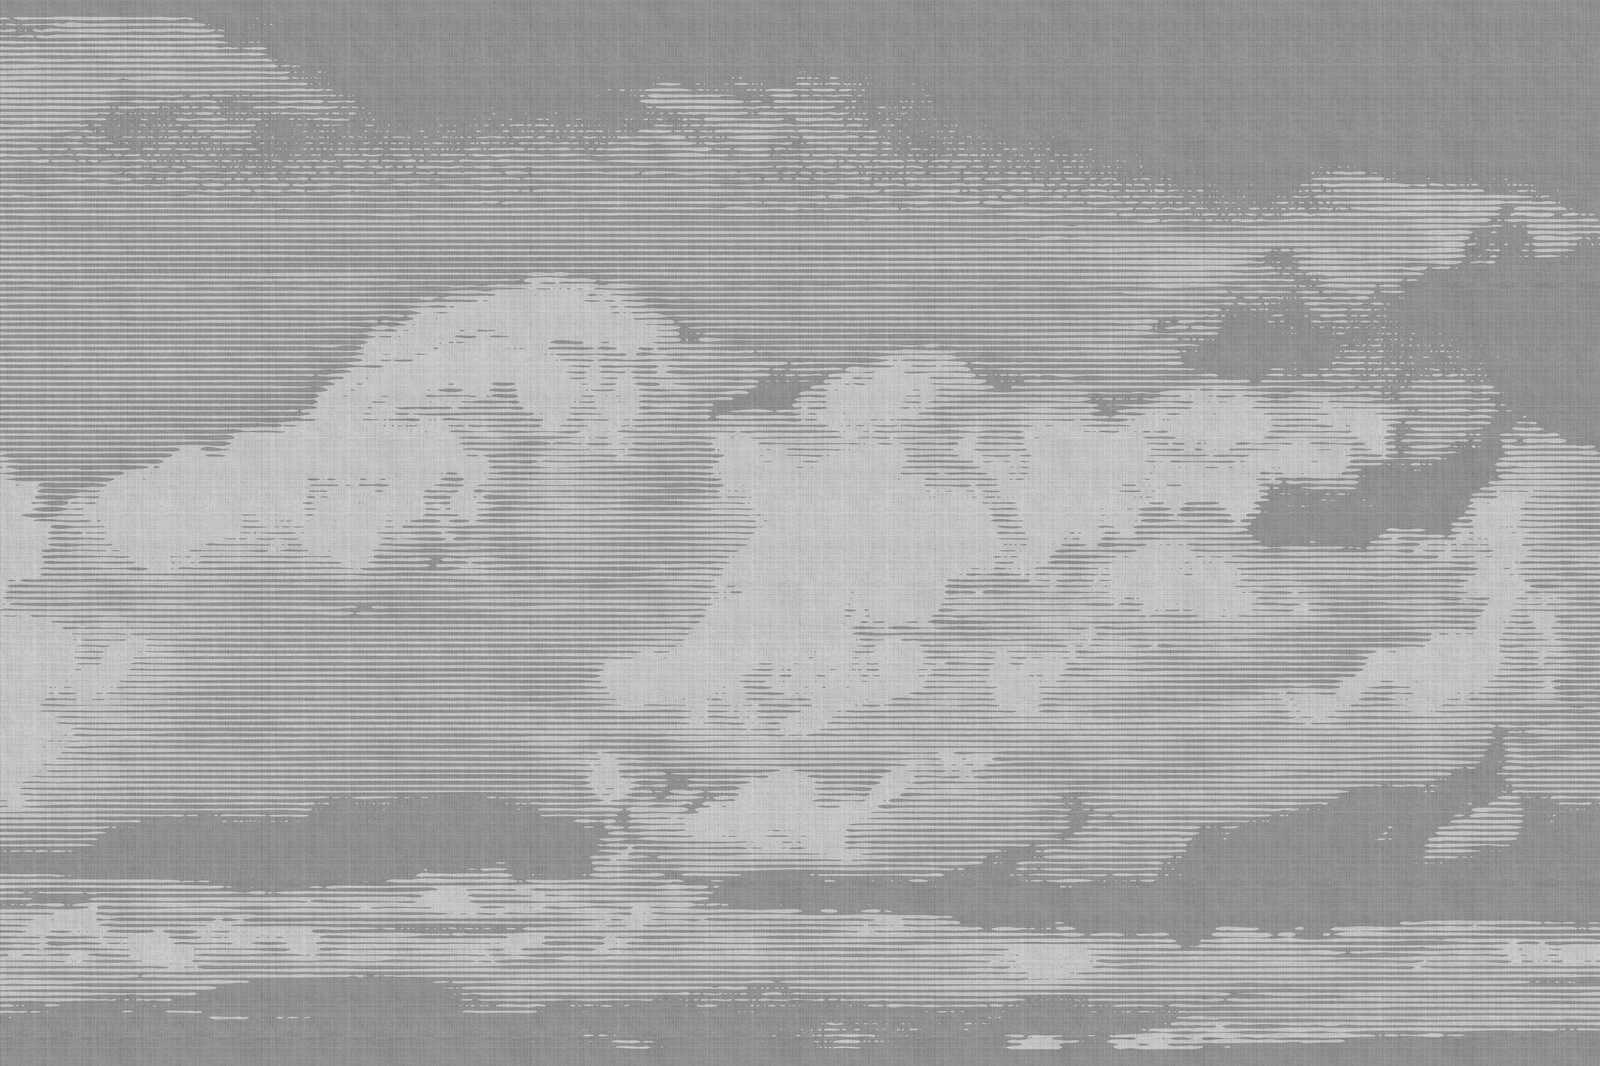             Clouds 2 - Hemels linnen doek met wolkenmotief - 1.20 m x 0.80 m
        